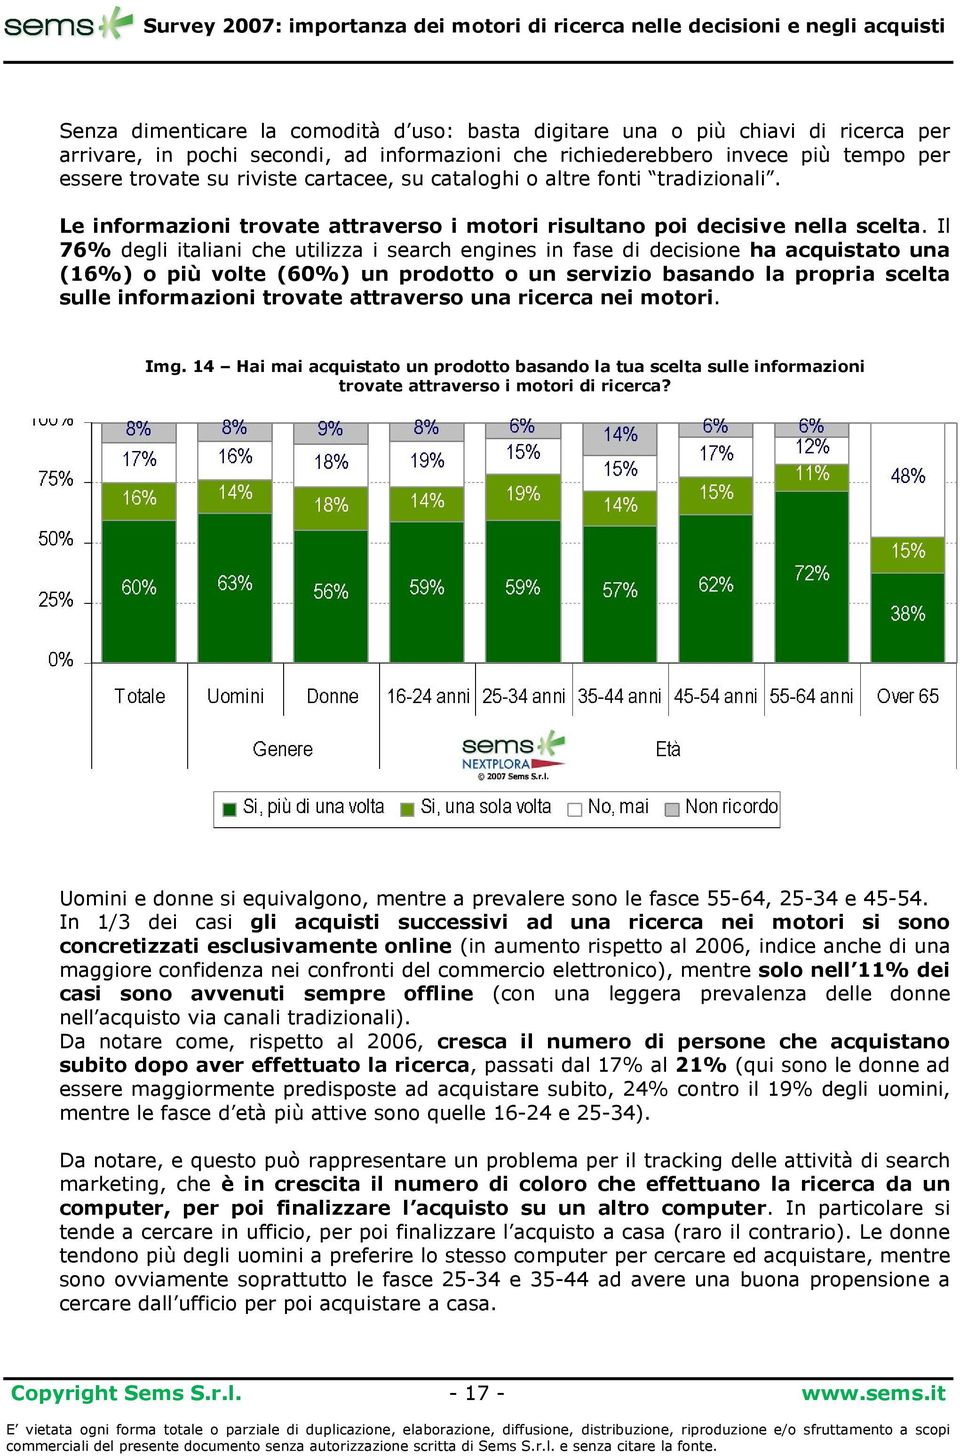 Il 76% degli italiani che utilizza i search engines in fase di decisione ha acquistato una (16%) o più volte (60%) un prodotto o un servizio basando la propria scelta sulle informazioni trovate